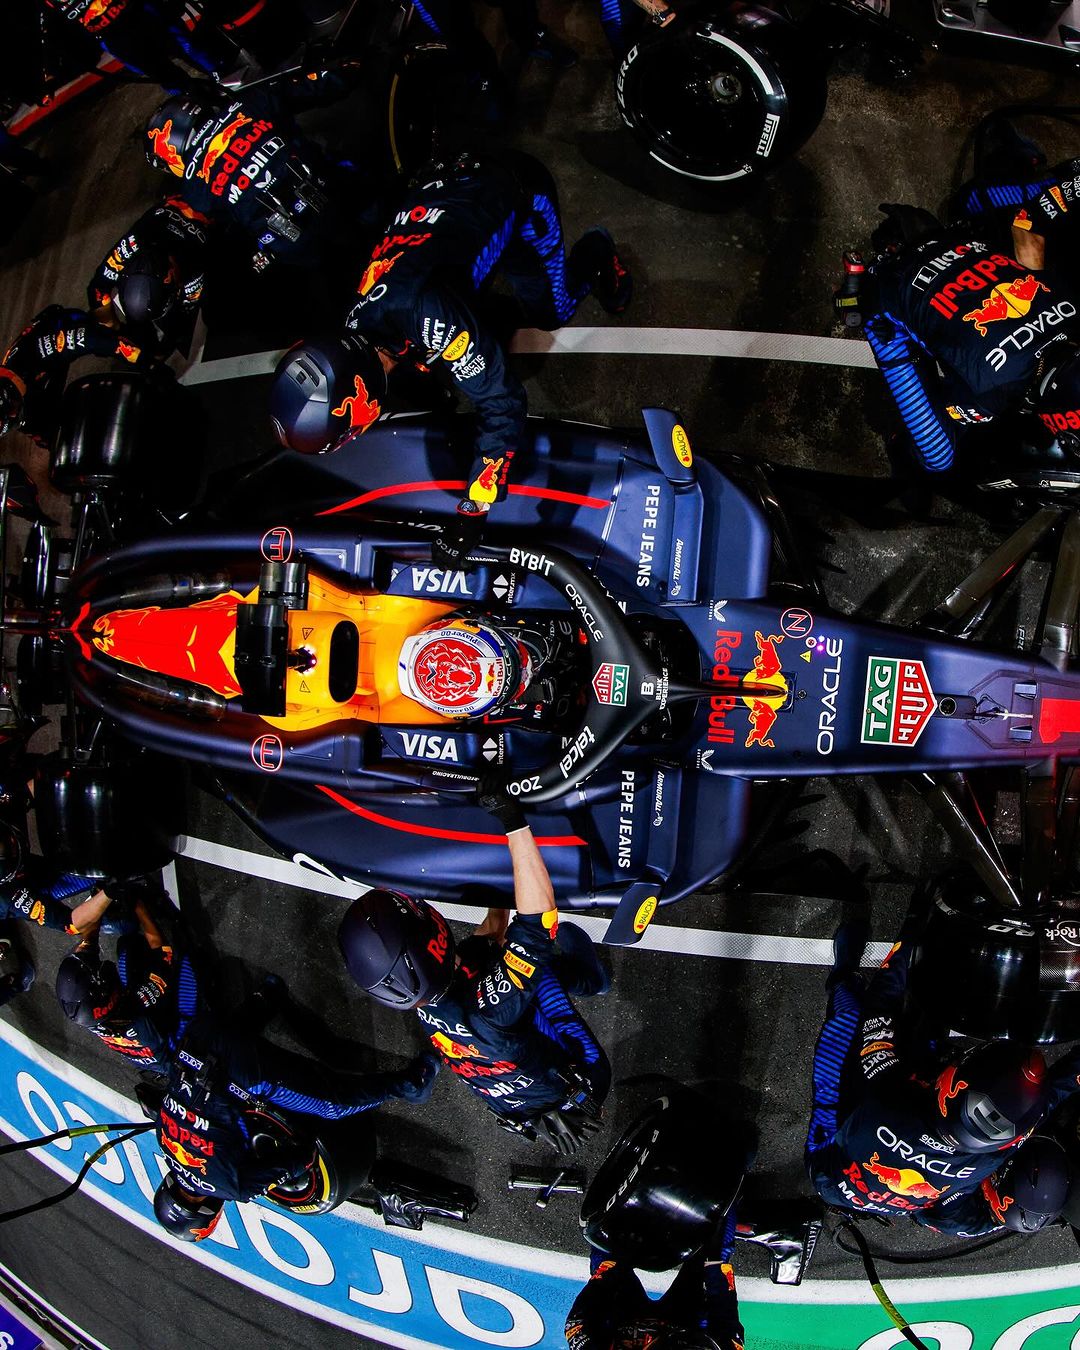 红牛车队,Red Bull Racing,沙特阿拉伯大奖,冠亚军,Max Verstappen